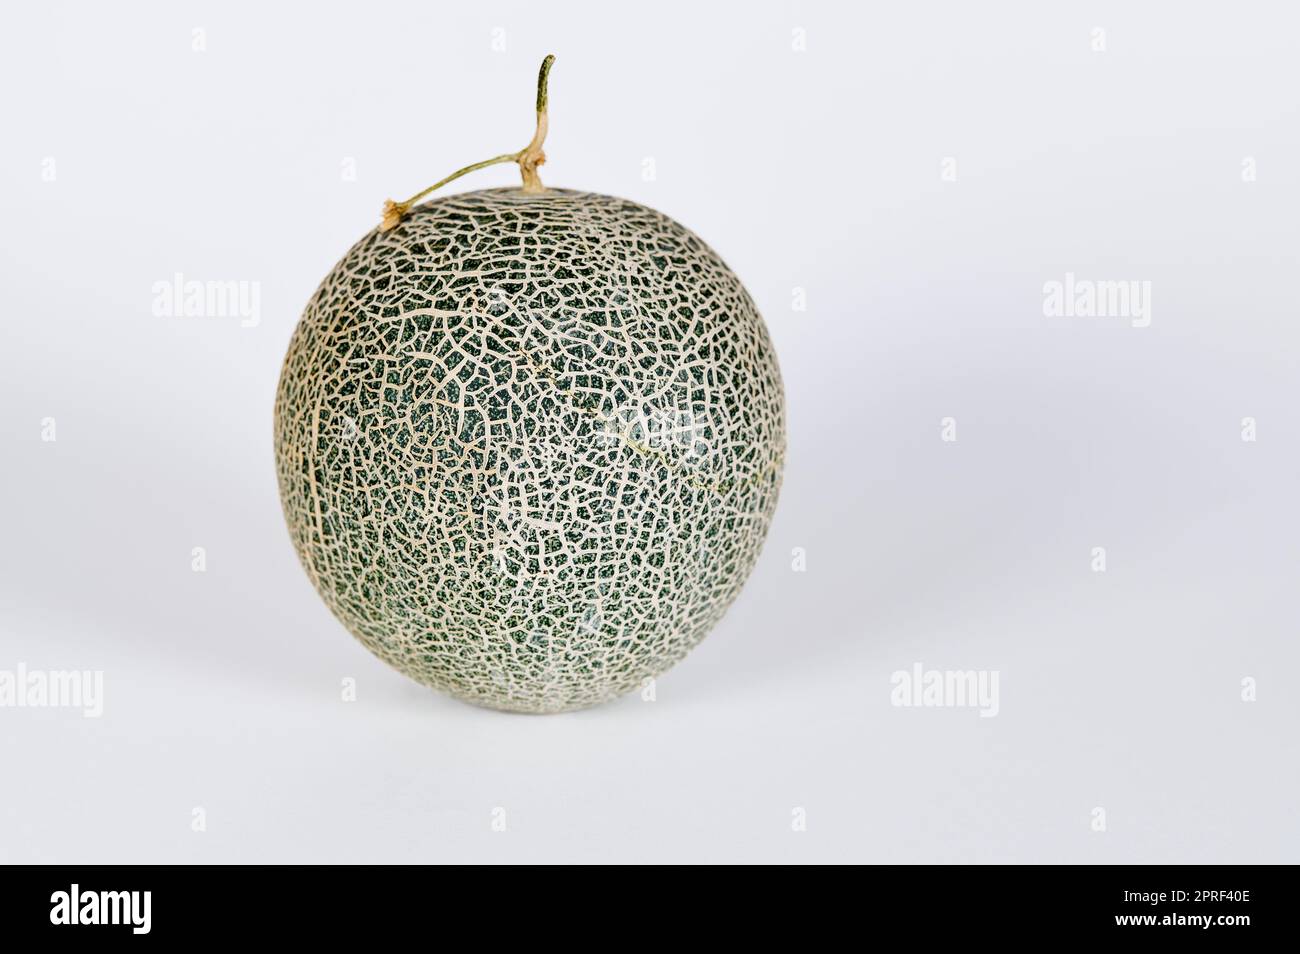 Cantaloupe Melon on white Stock Photo